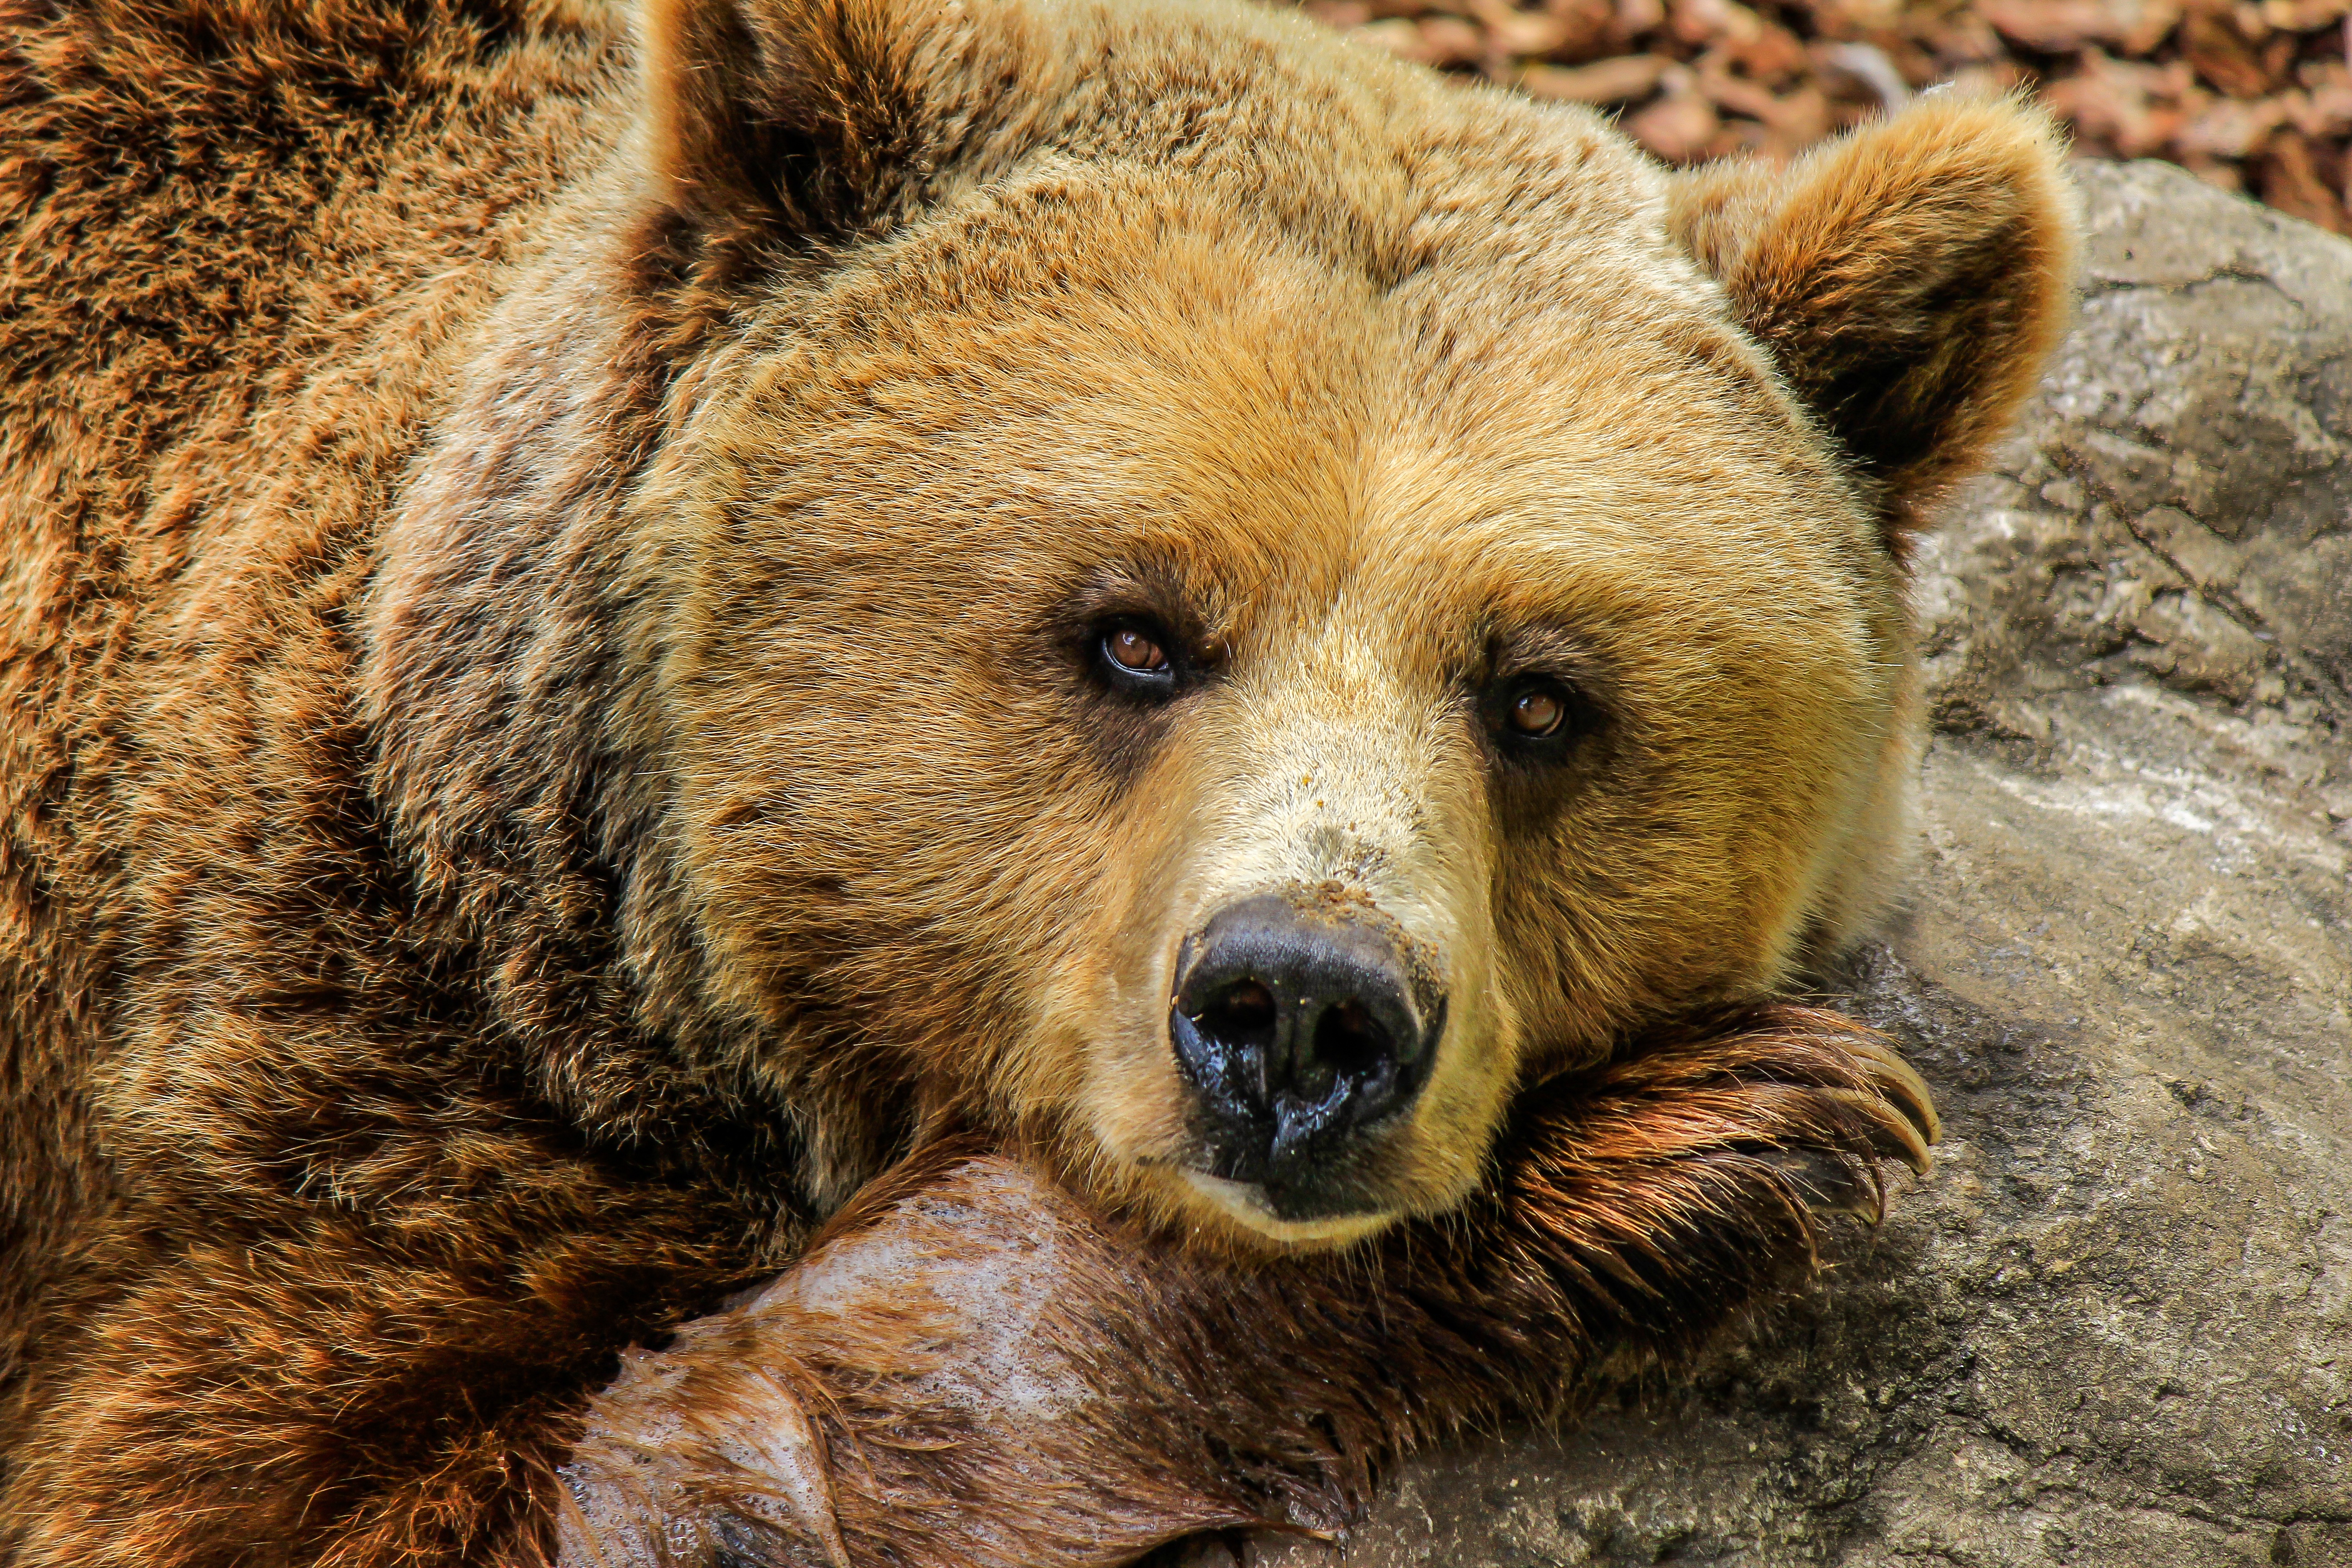 1333 медведя погибнут от рук охотников в лесах Кировской области